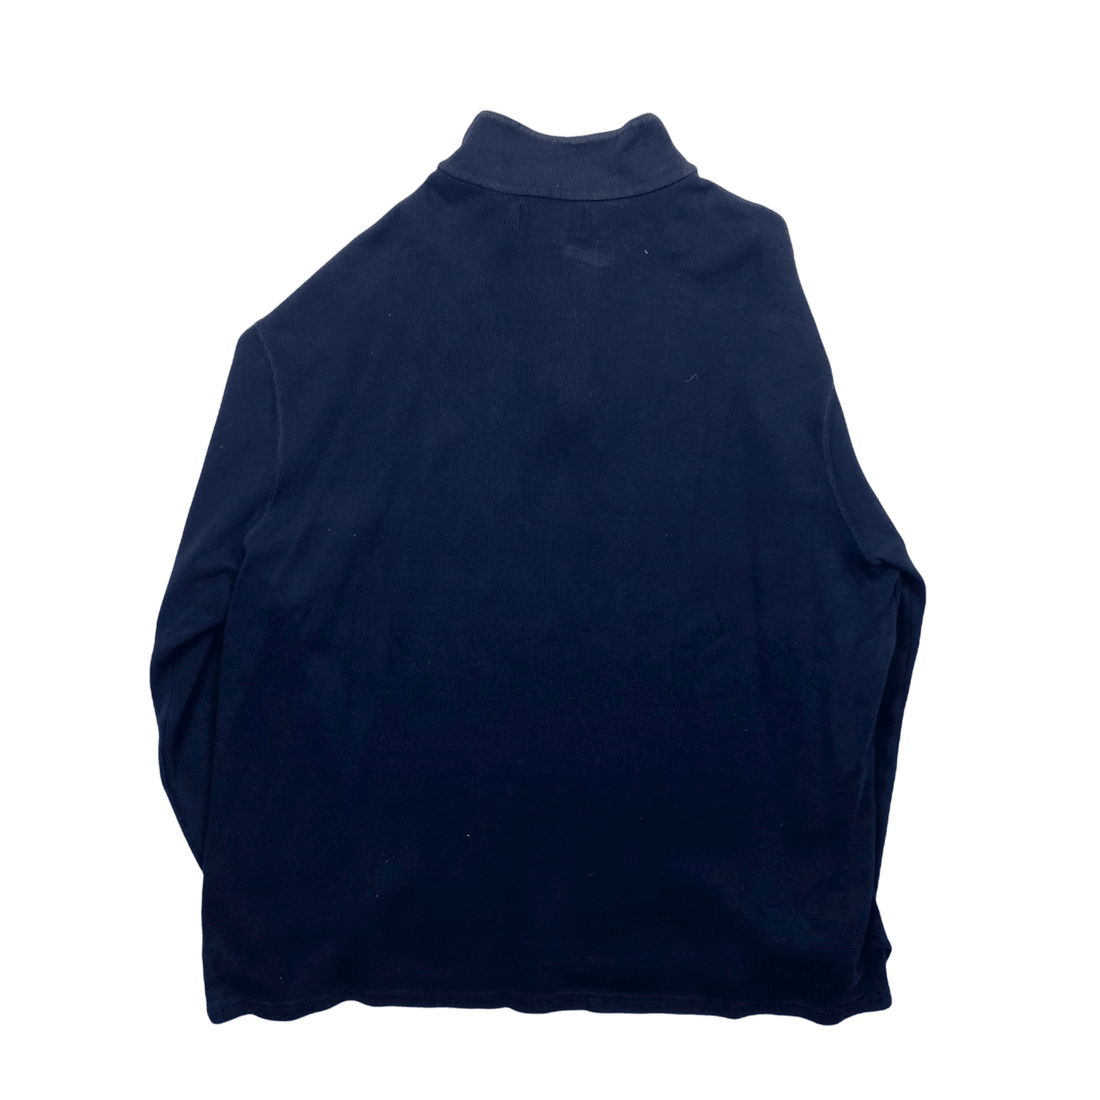 Vintage 90s Navy Blue Polo Ralph Lauren Quarter Zip Sweatshirt - Extra Large - The Streetwear Studio